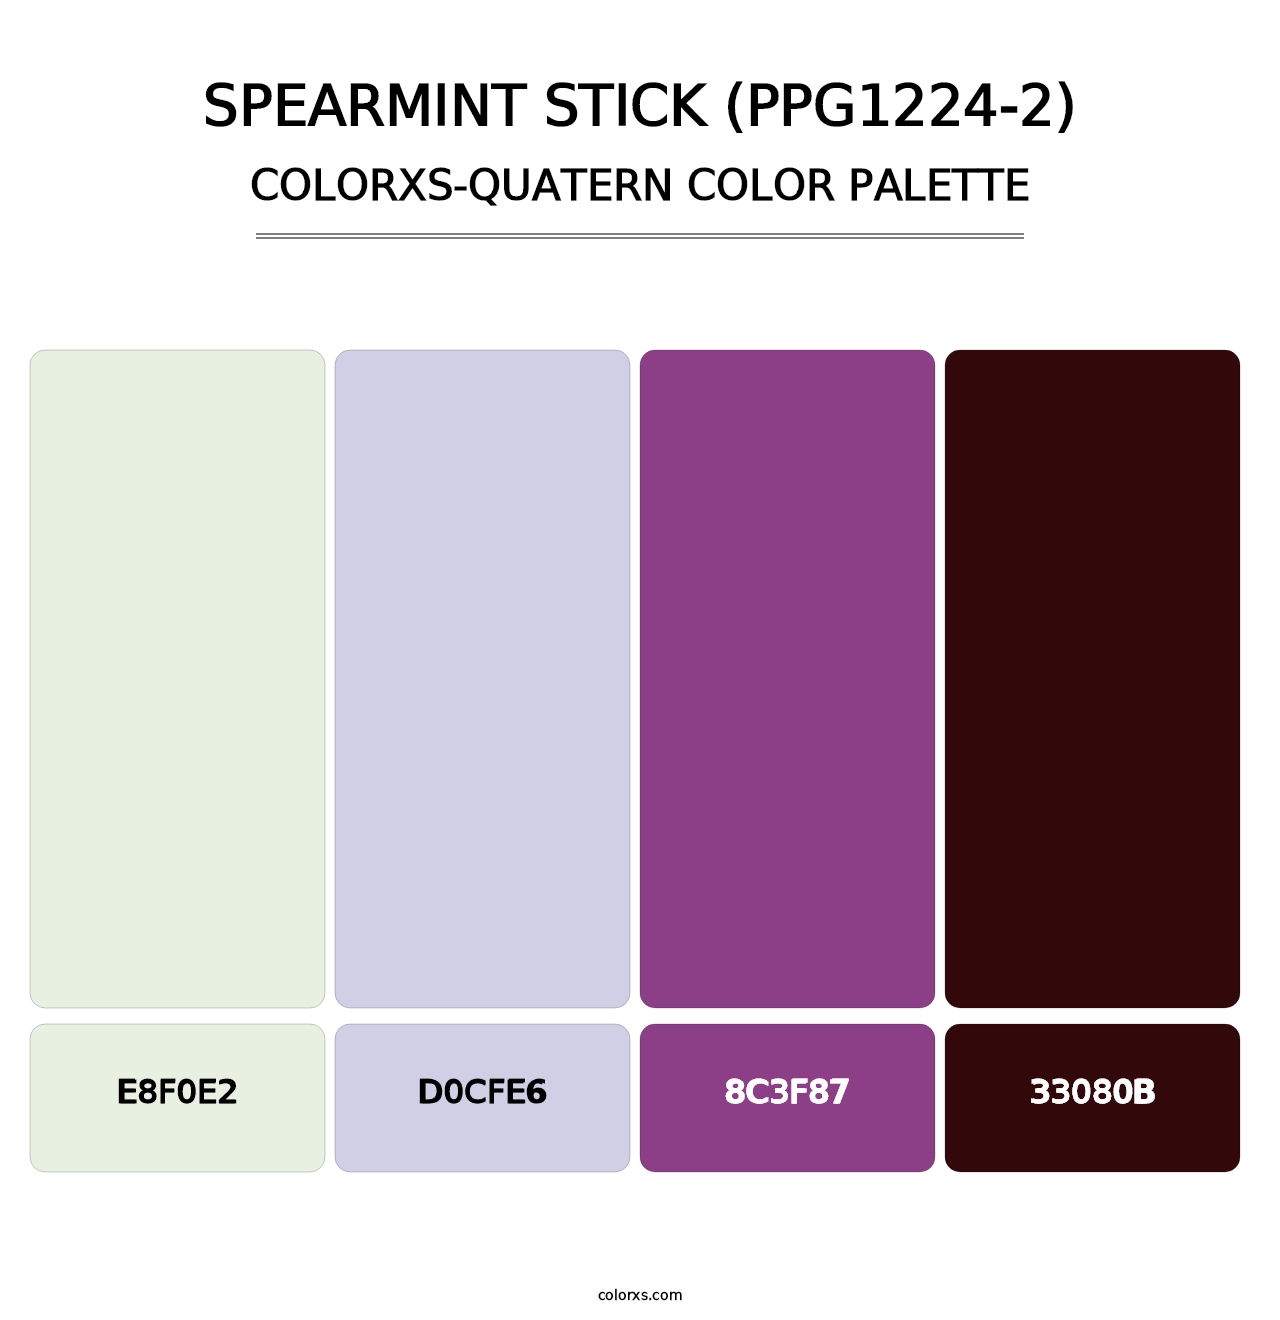 Spearmint Stick (PPG1224-2) - Colorxs Quatern Palette